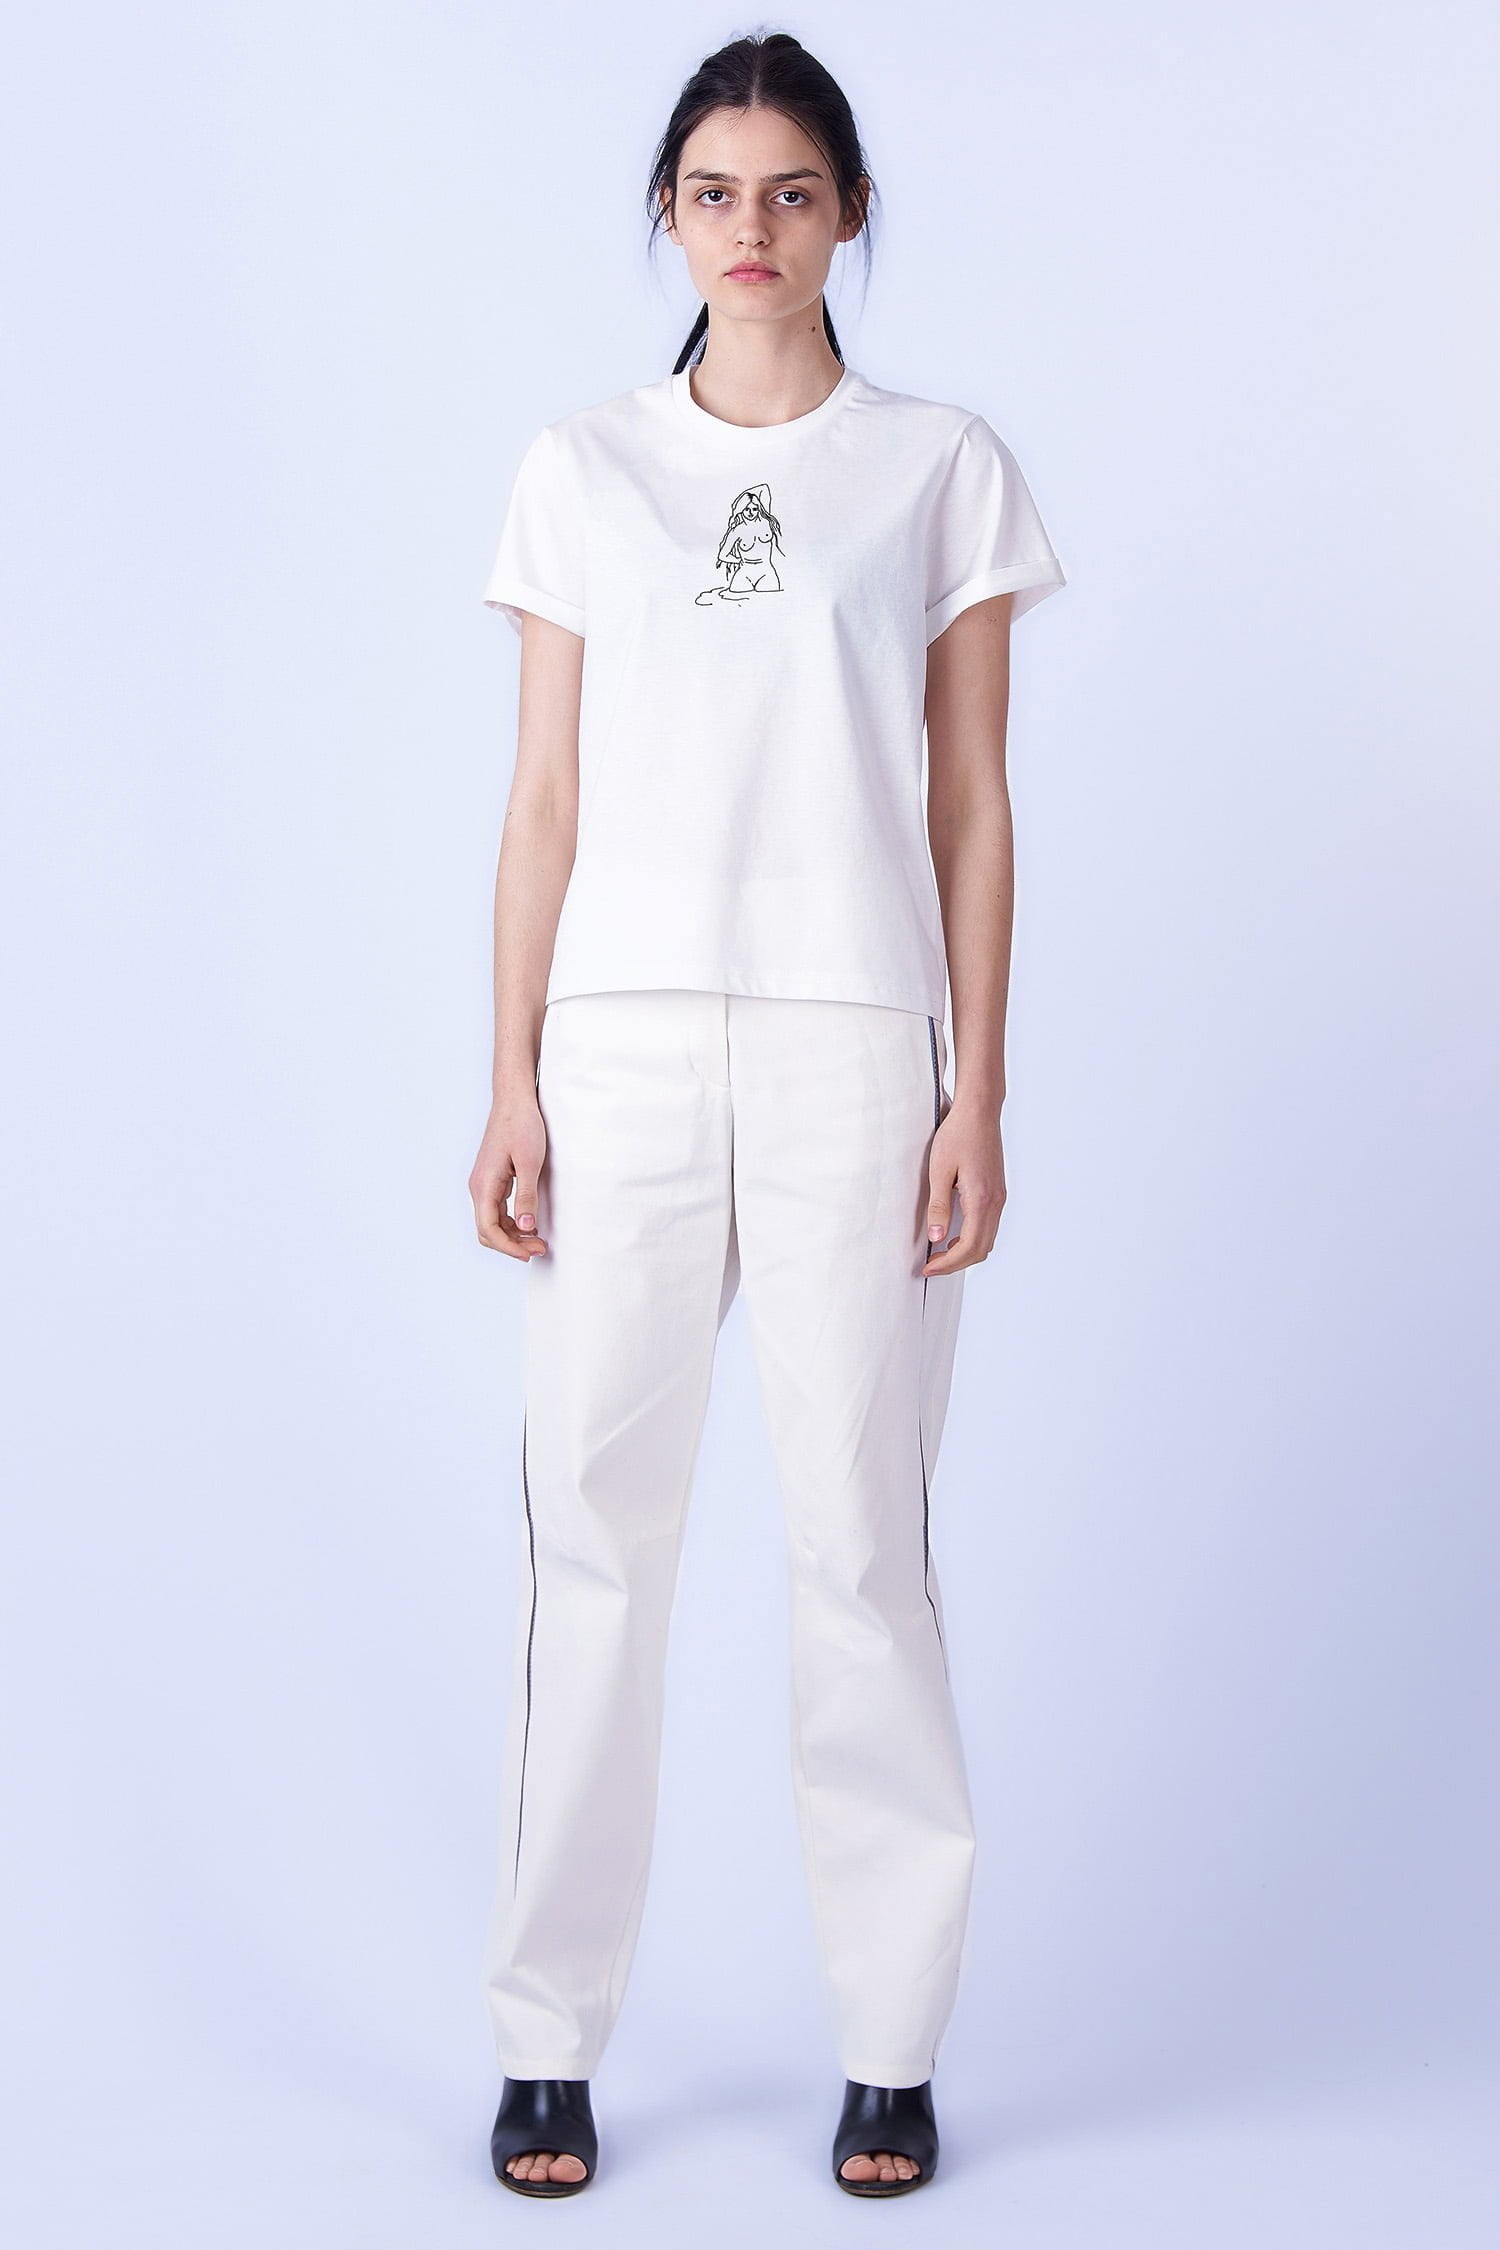 Acephala Ss2019 White T Shirt Print Venus Front